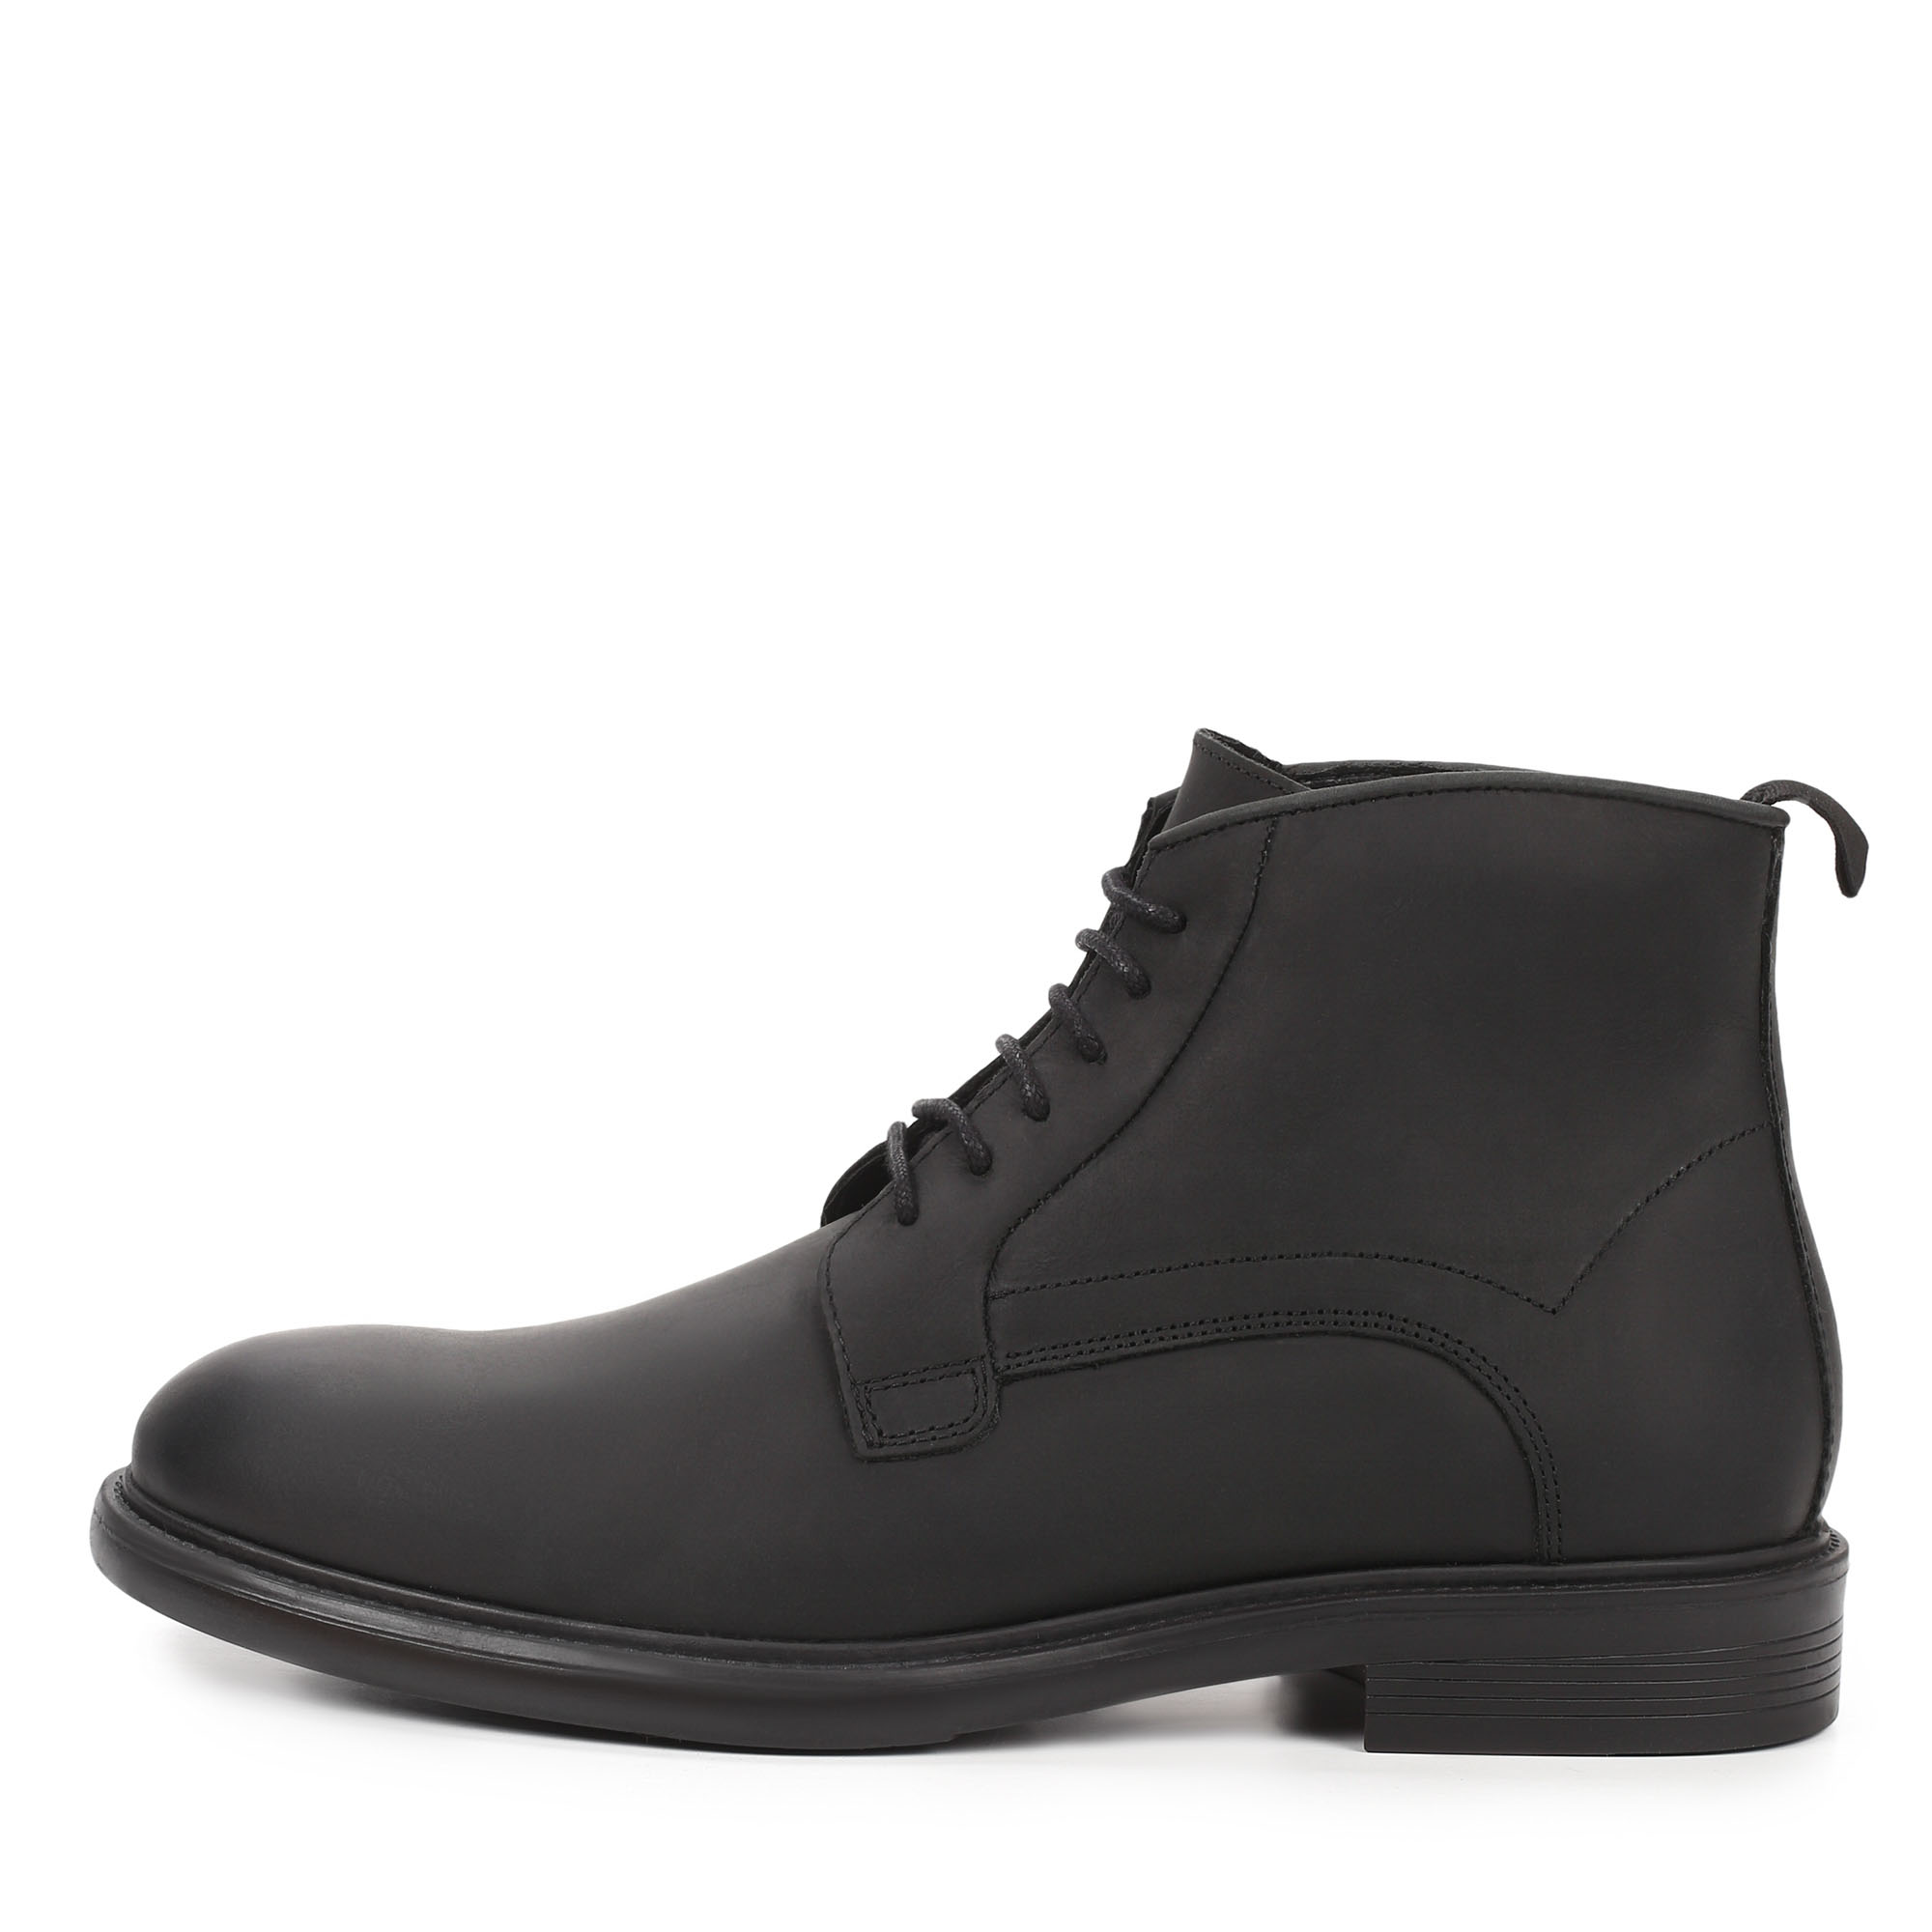 Ботинки Thomas Munz 569-029C-2102, цвет черный, размер 41 - фото 1